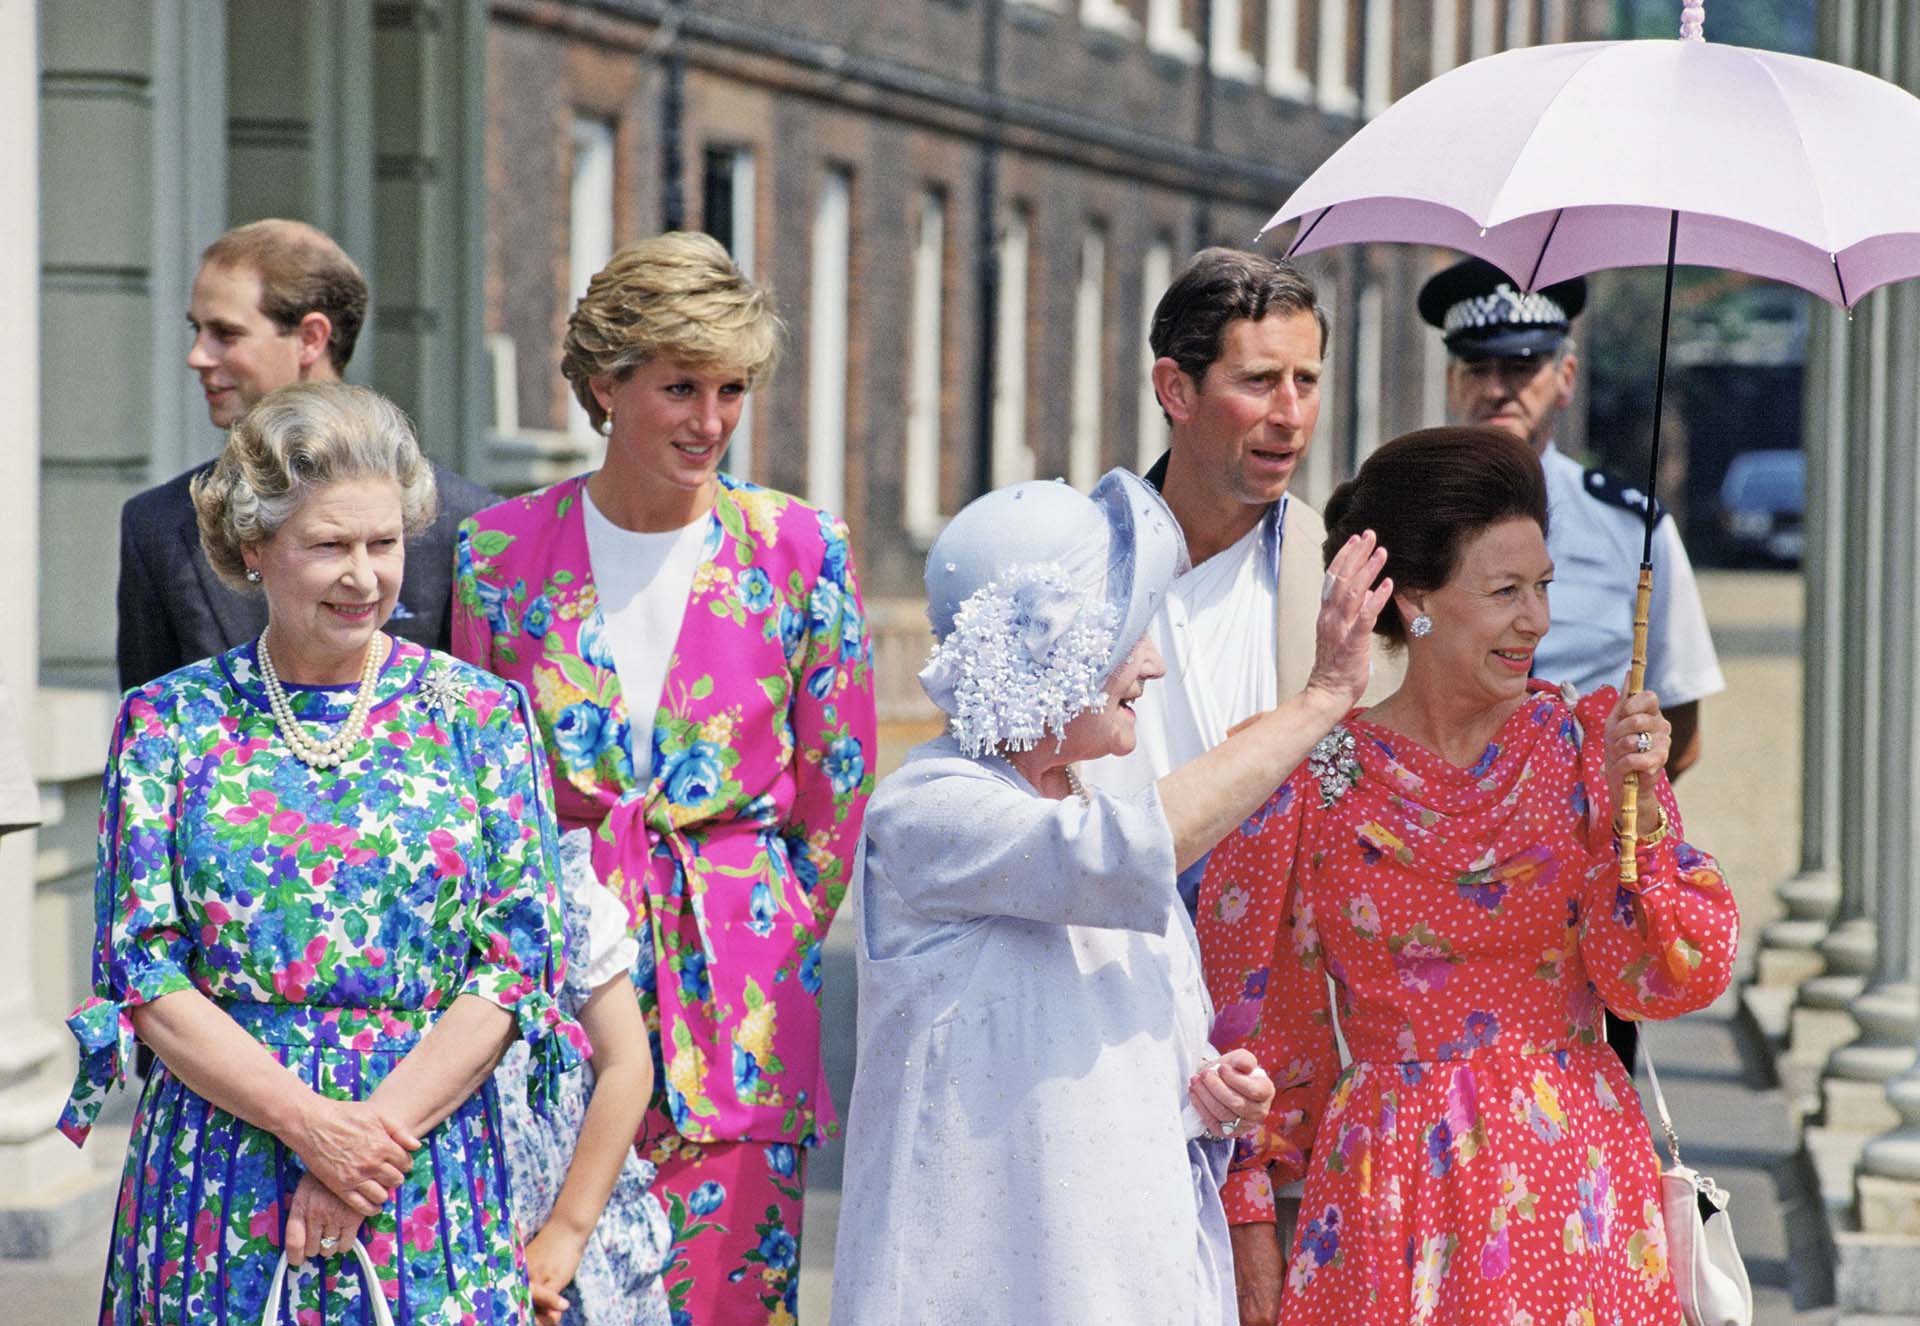 La monarca camina delante de Lady Di en el festejo de los 90 años de la Reina Madre. Las acompañan el príncipe Carlos y la princesa Margarita, quienes participaron de la celebración en Clarence House